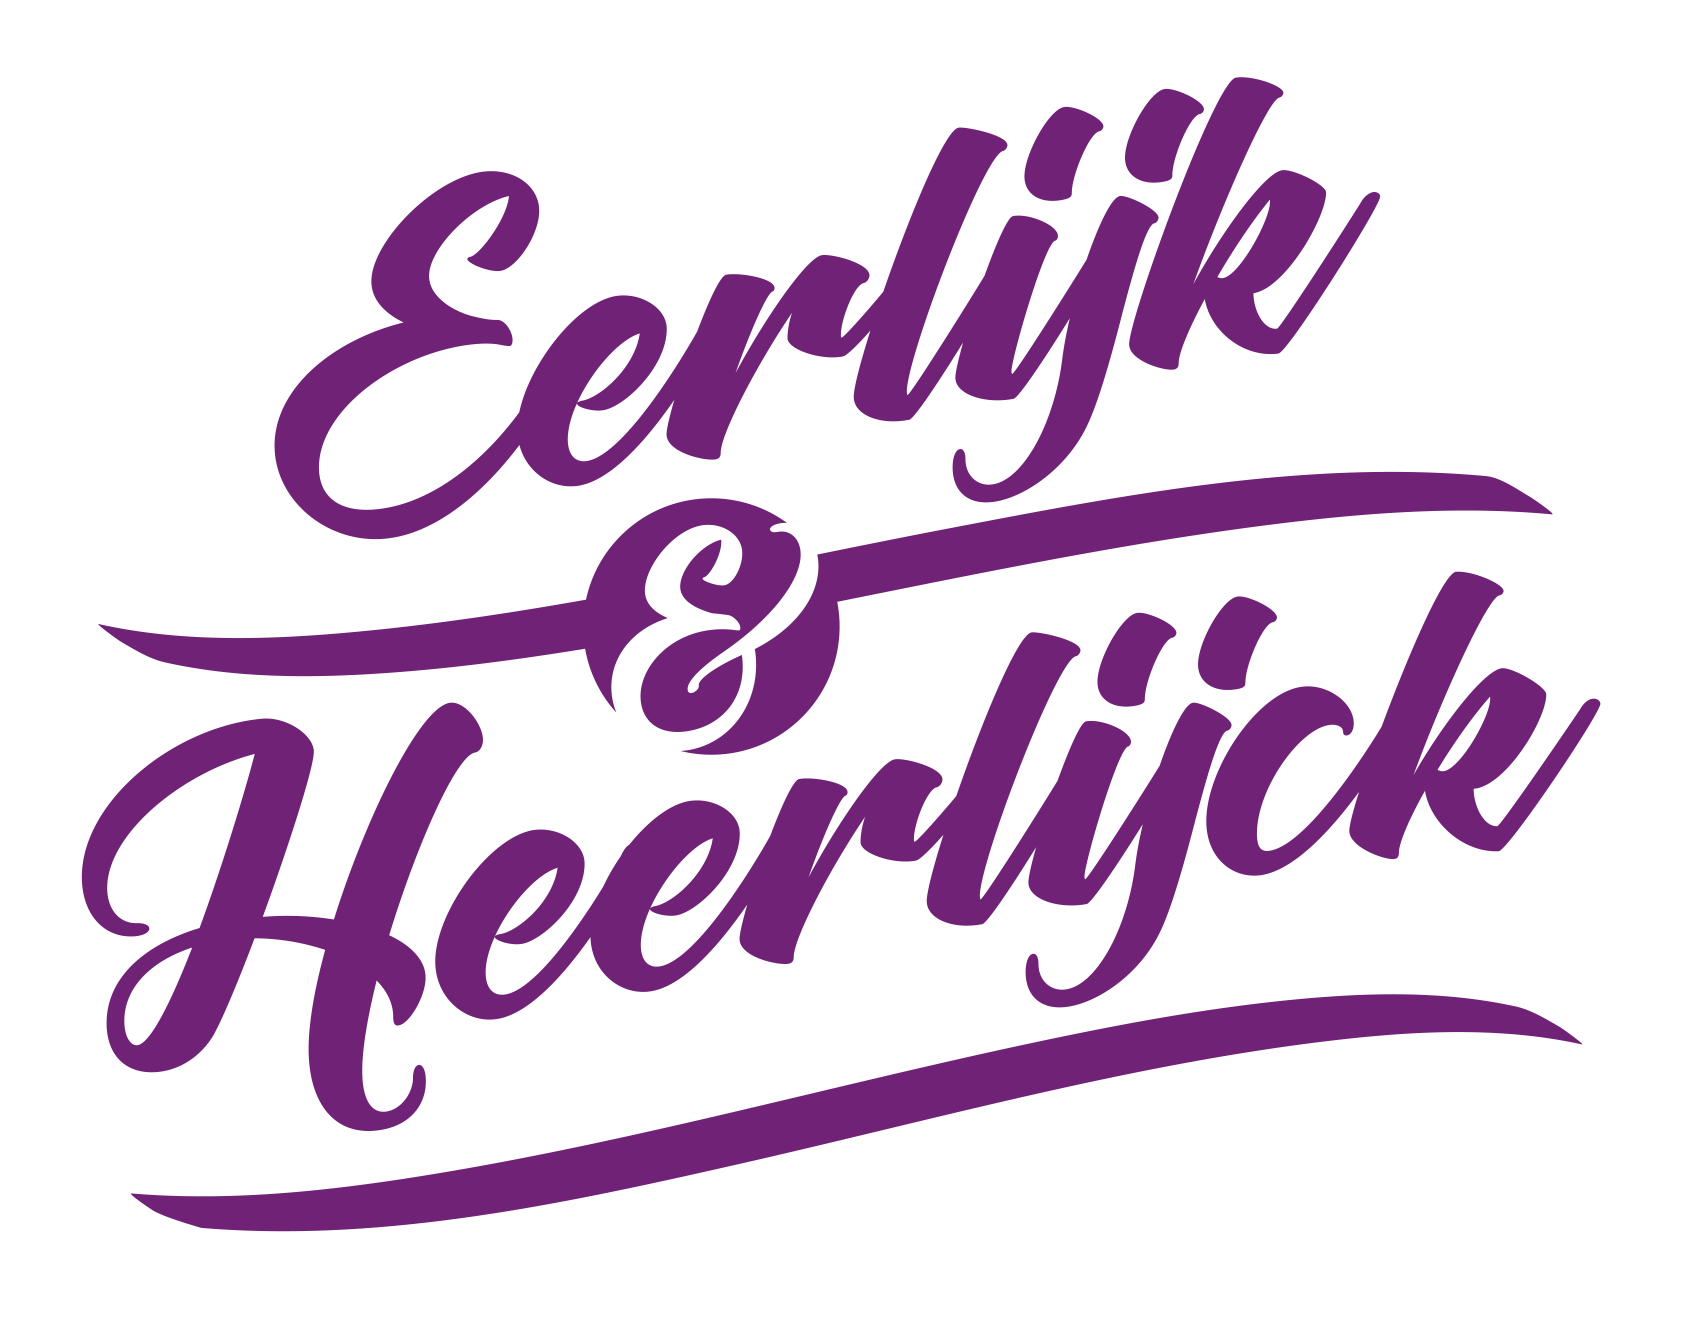 Eerlijk & Heerlijck